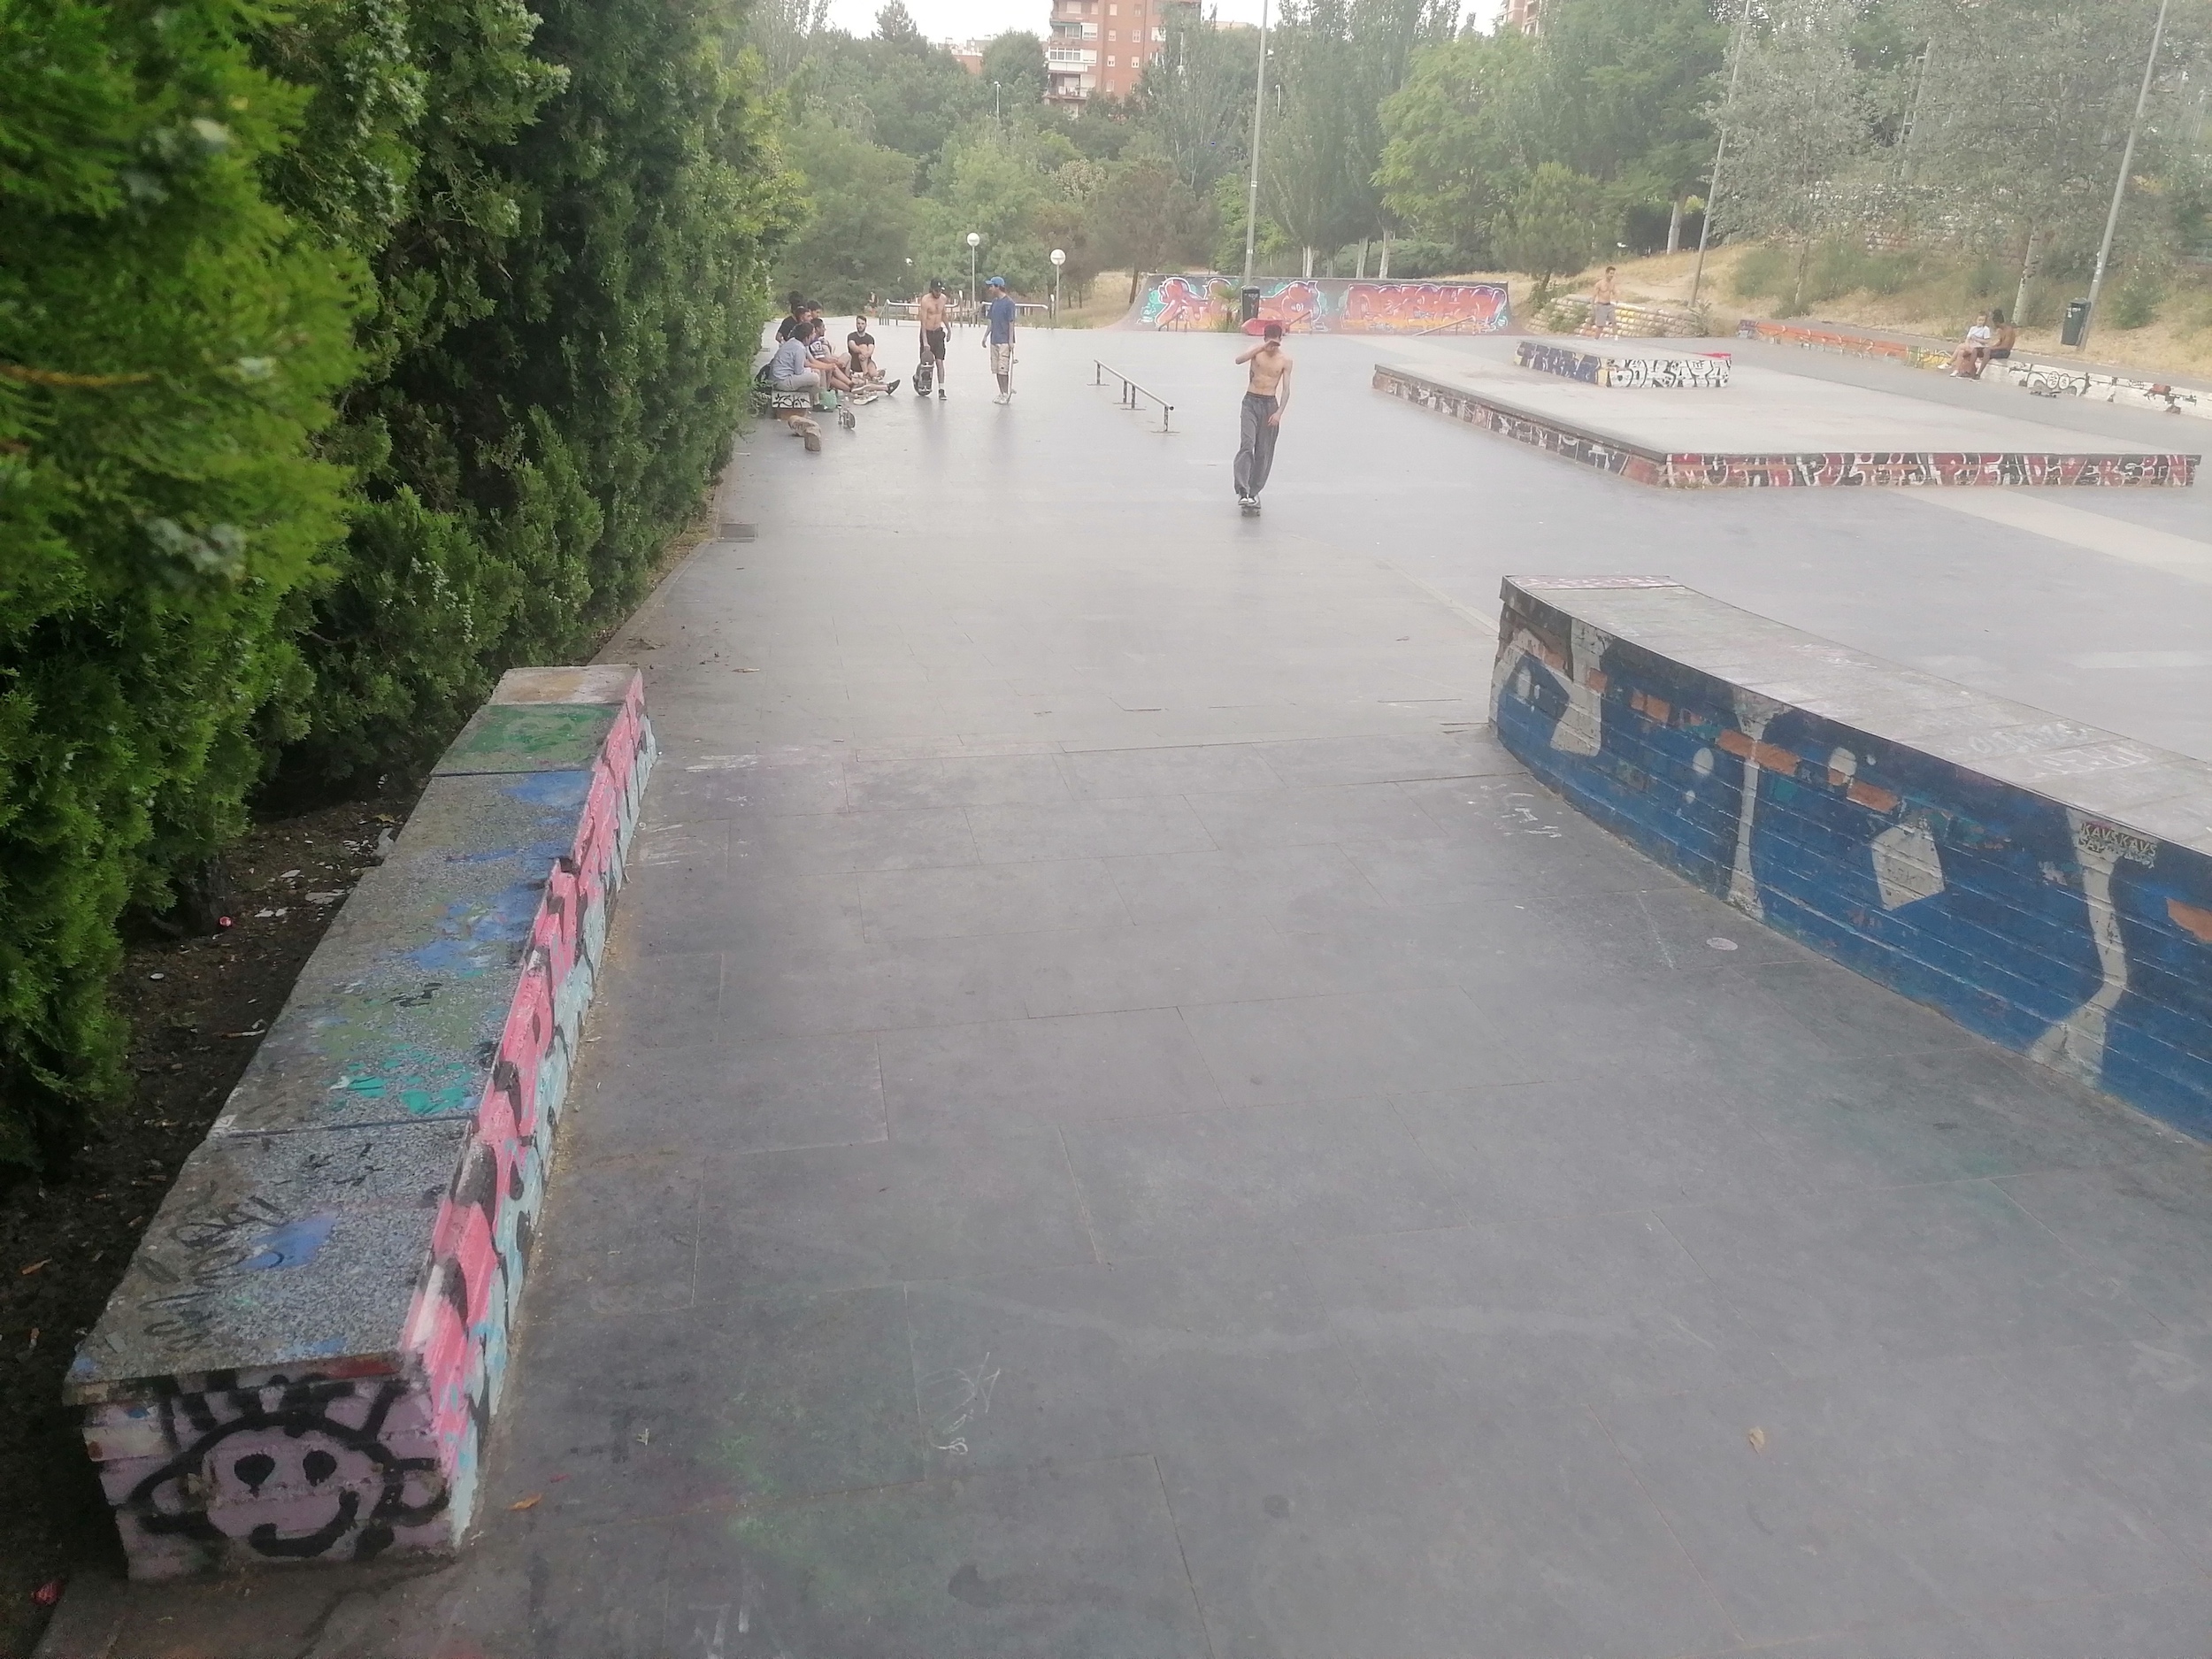 Rodríguez Sahagún skatepark